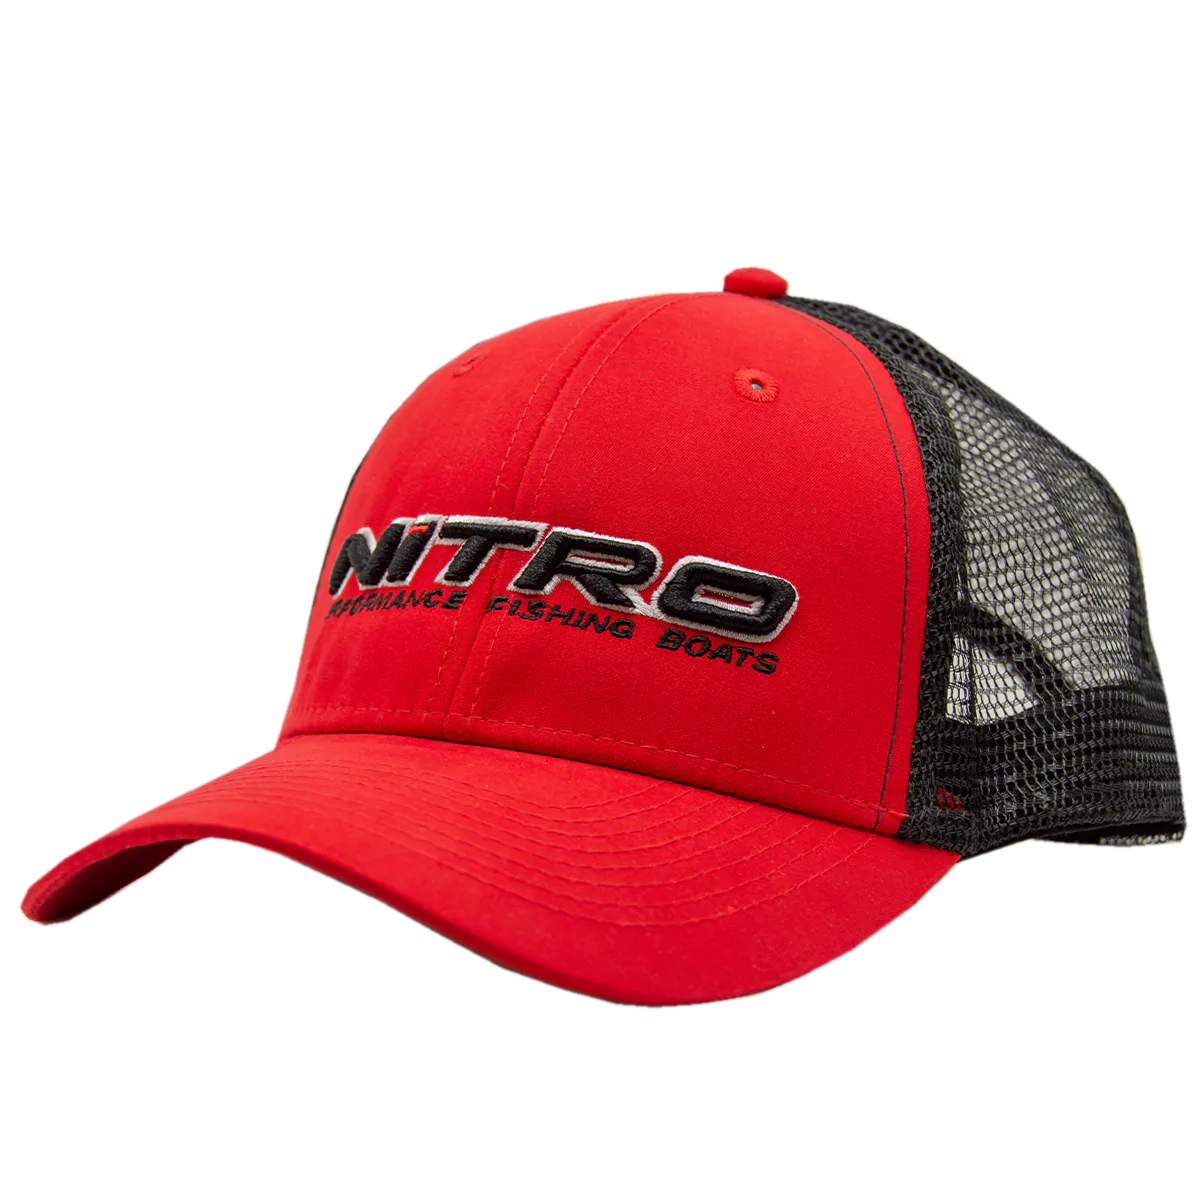 Nitro Mesh Cap - Red/Black